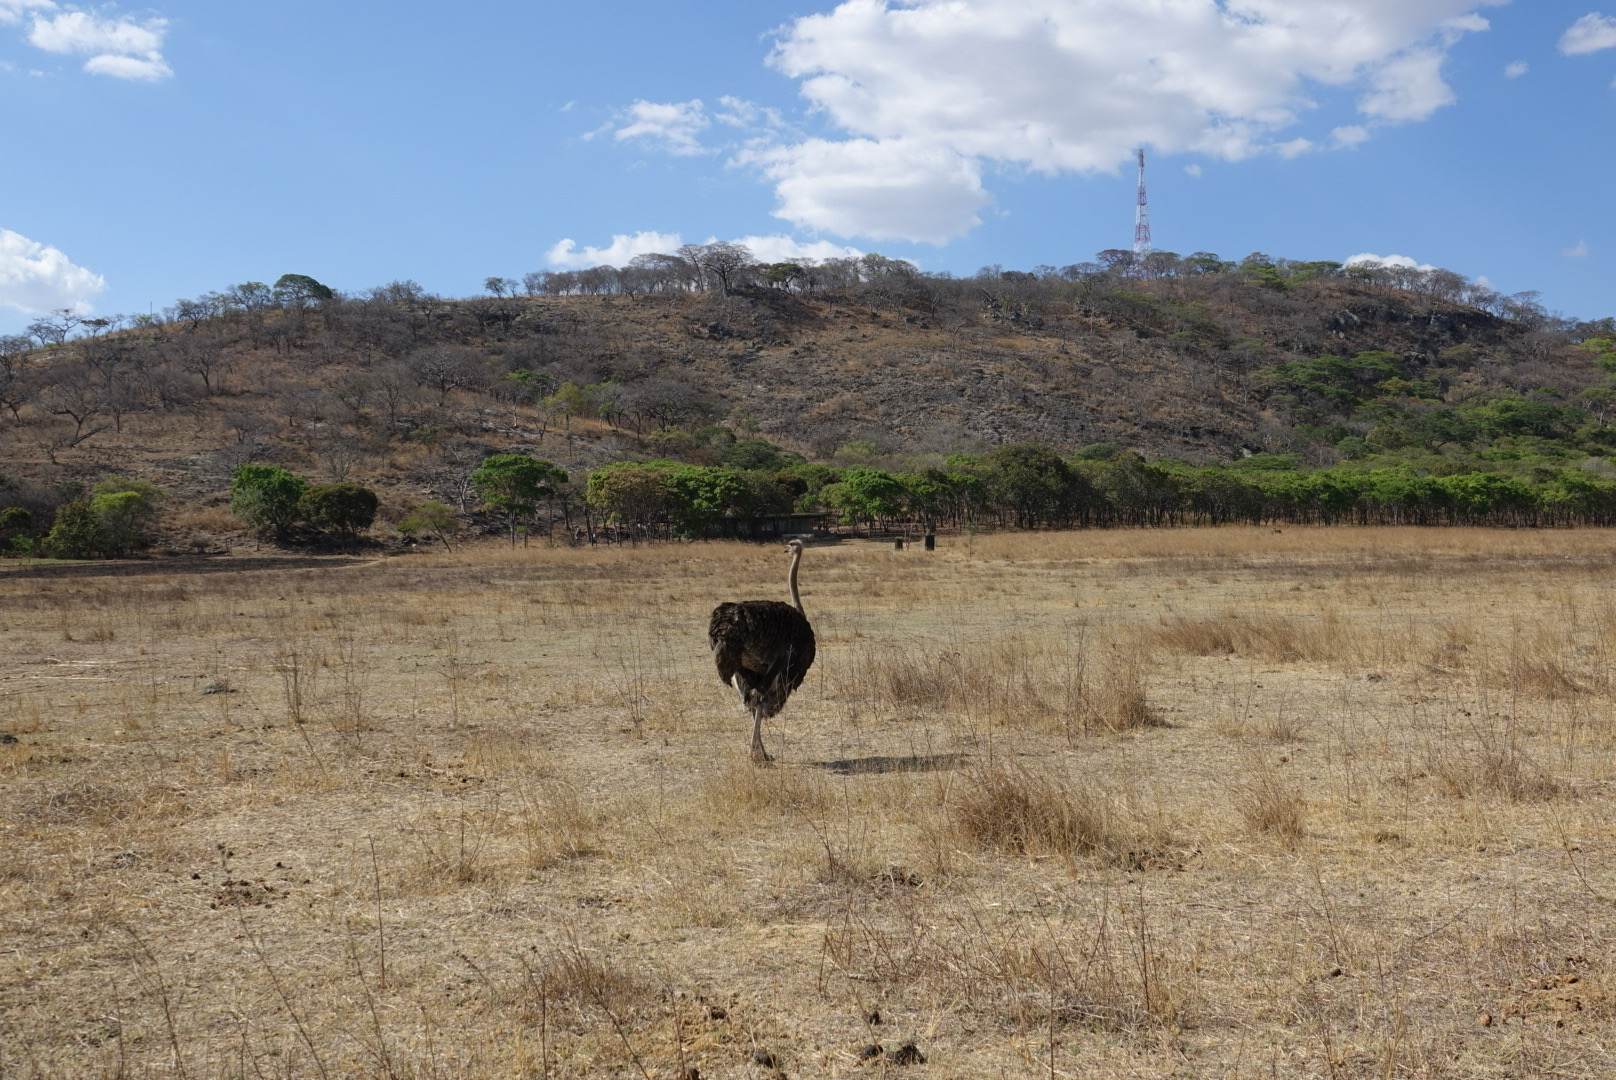 旱季末期的津巴布韦，干旱和酷热的天气，使以食草为主的野生动物四处寻觅稀少的水源和绿叶植被，以解决身体